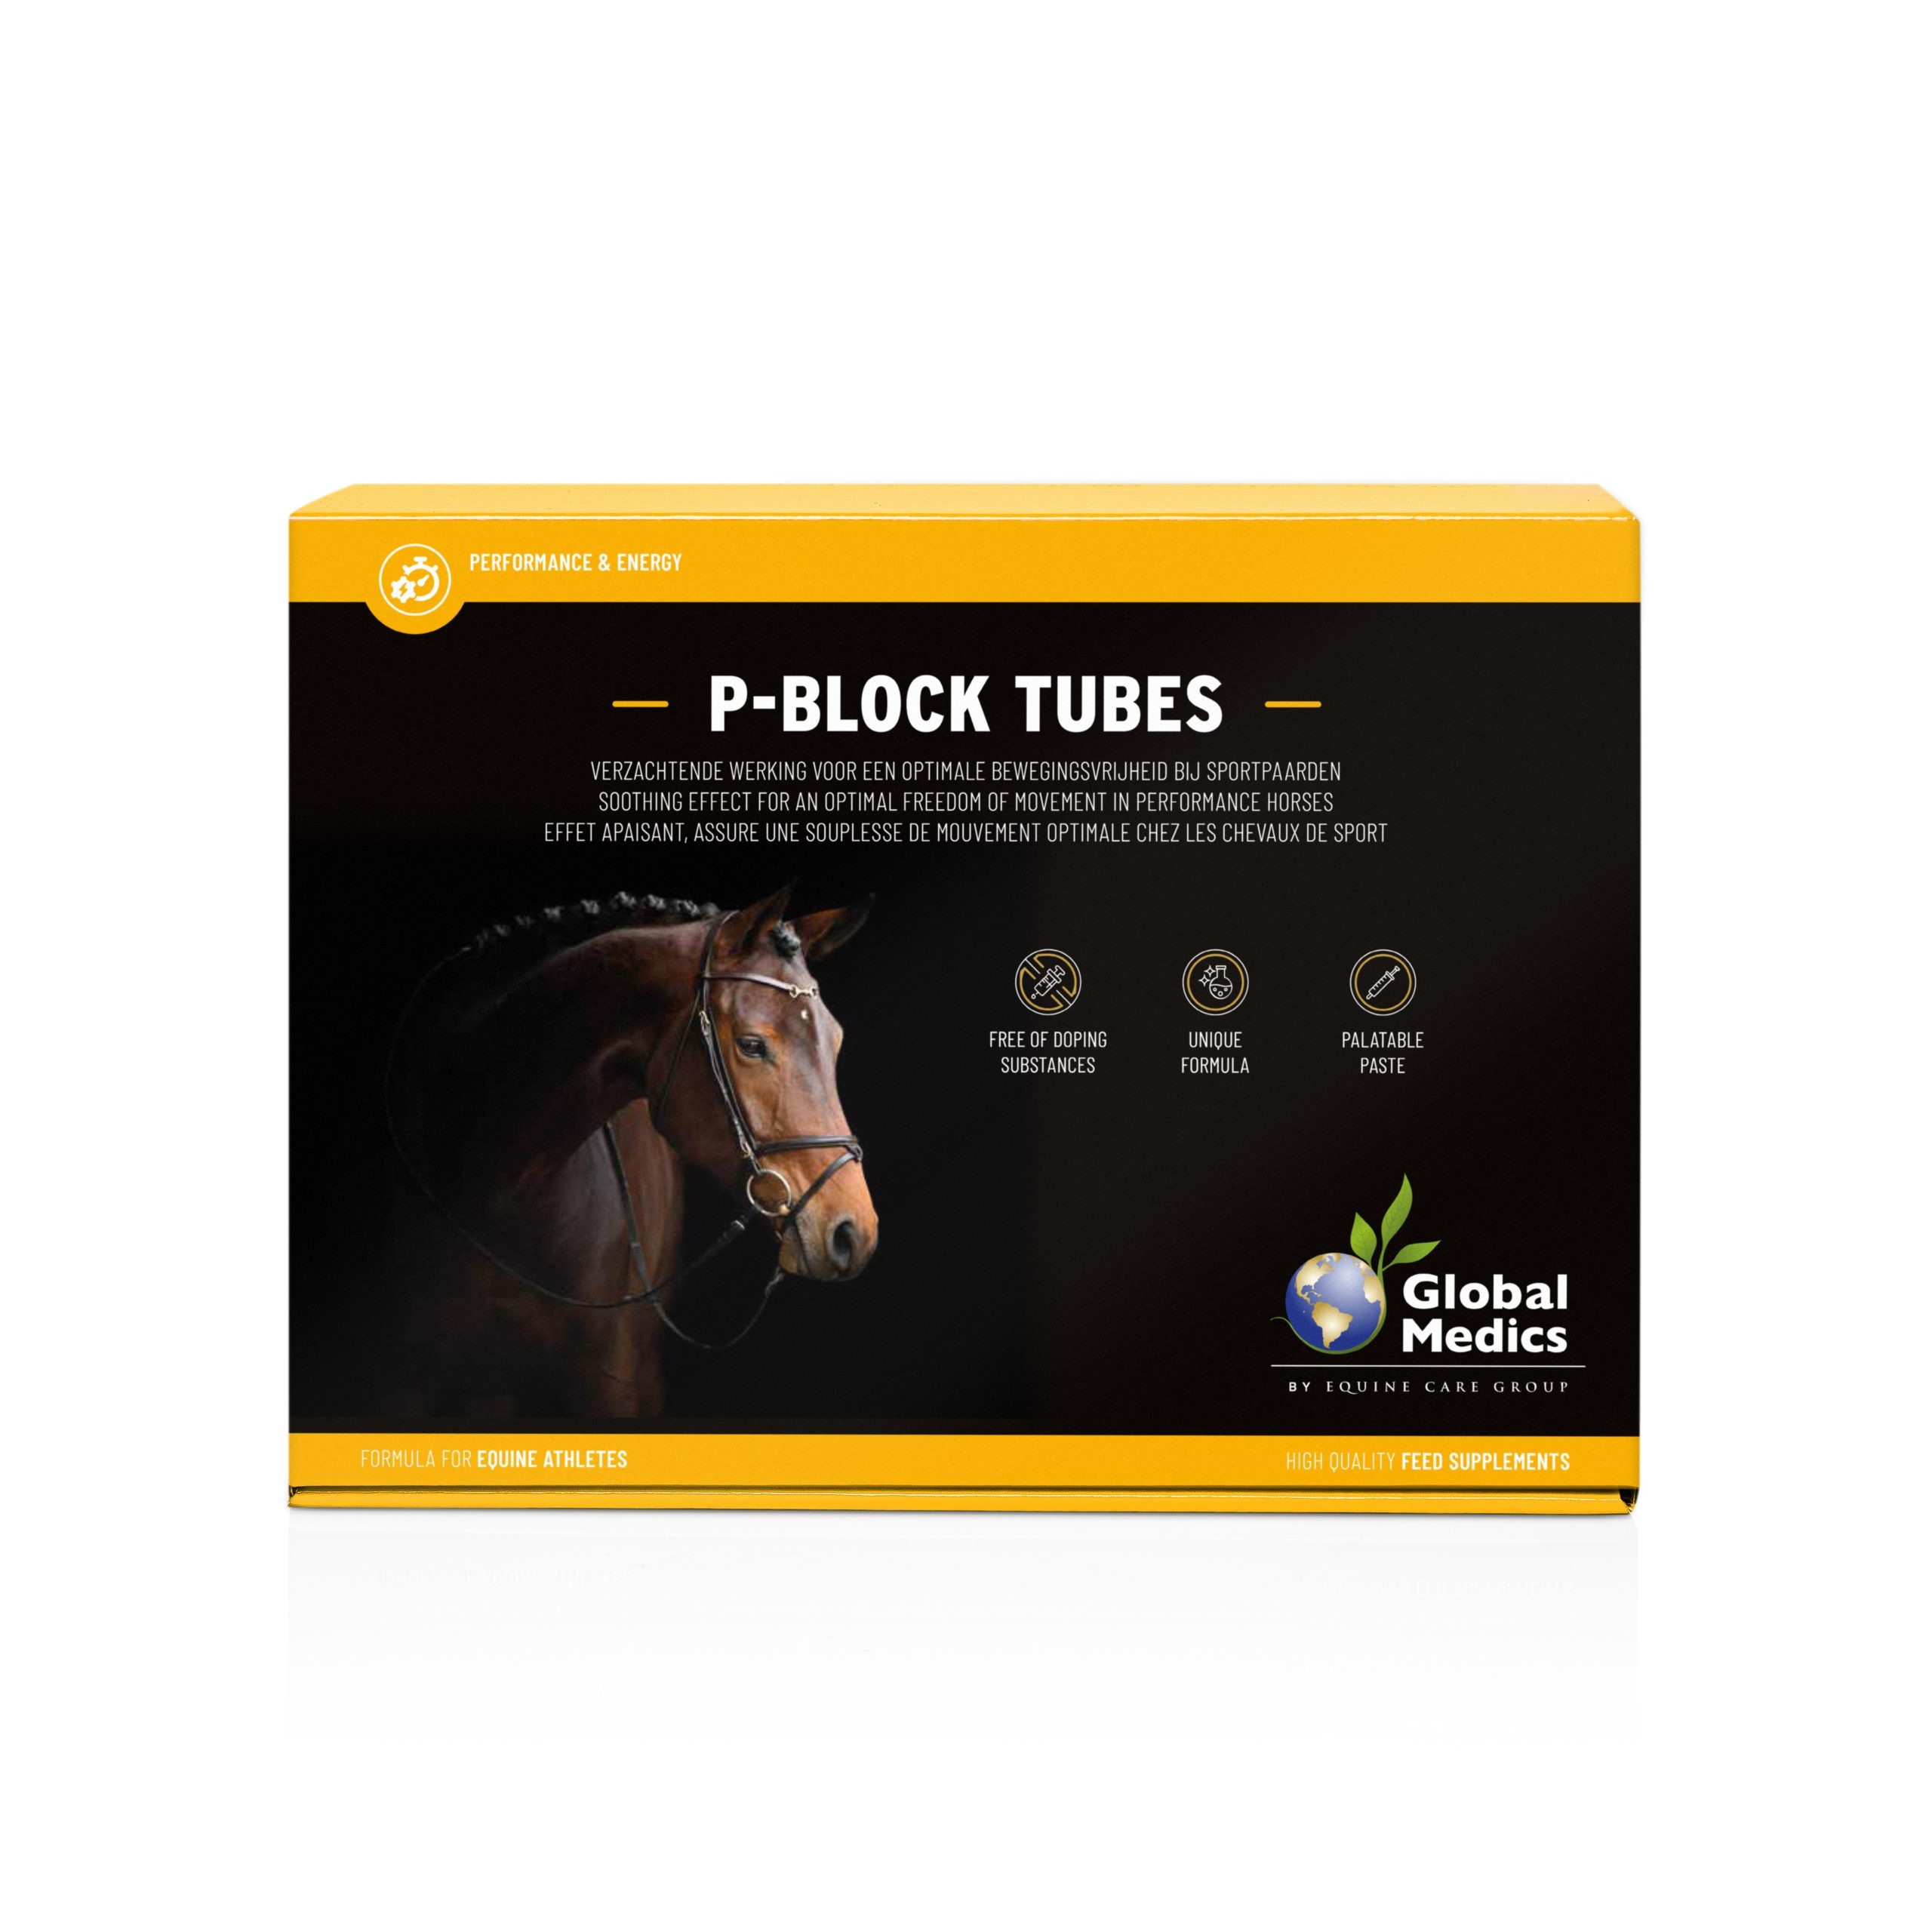 Køb Global Medics P-Block Tubes, og hold hesten smidig og i topform. Bestil i dag – Vi leverer i løbet af 1-3 dage. Fragtfrit fra kun 499.- til pakkeshop.